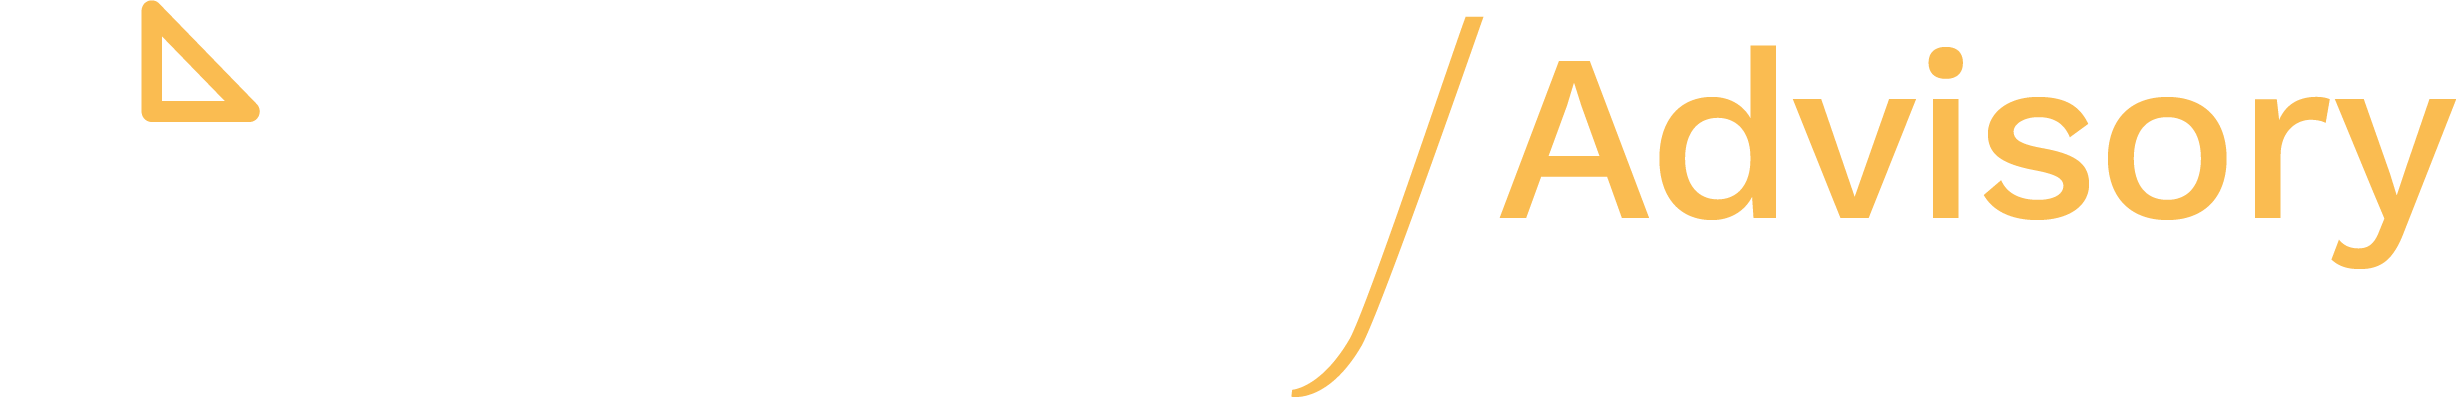 headway advisory logo